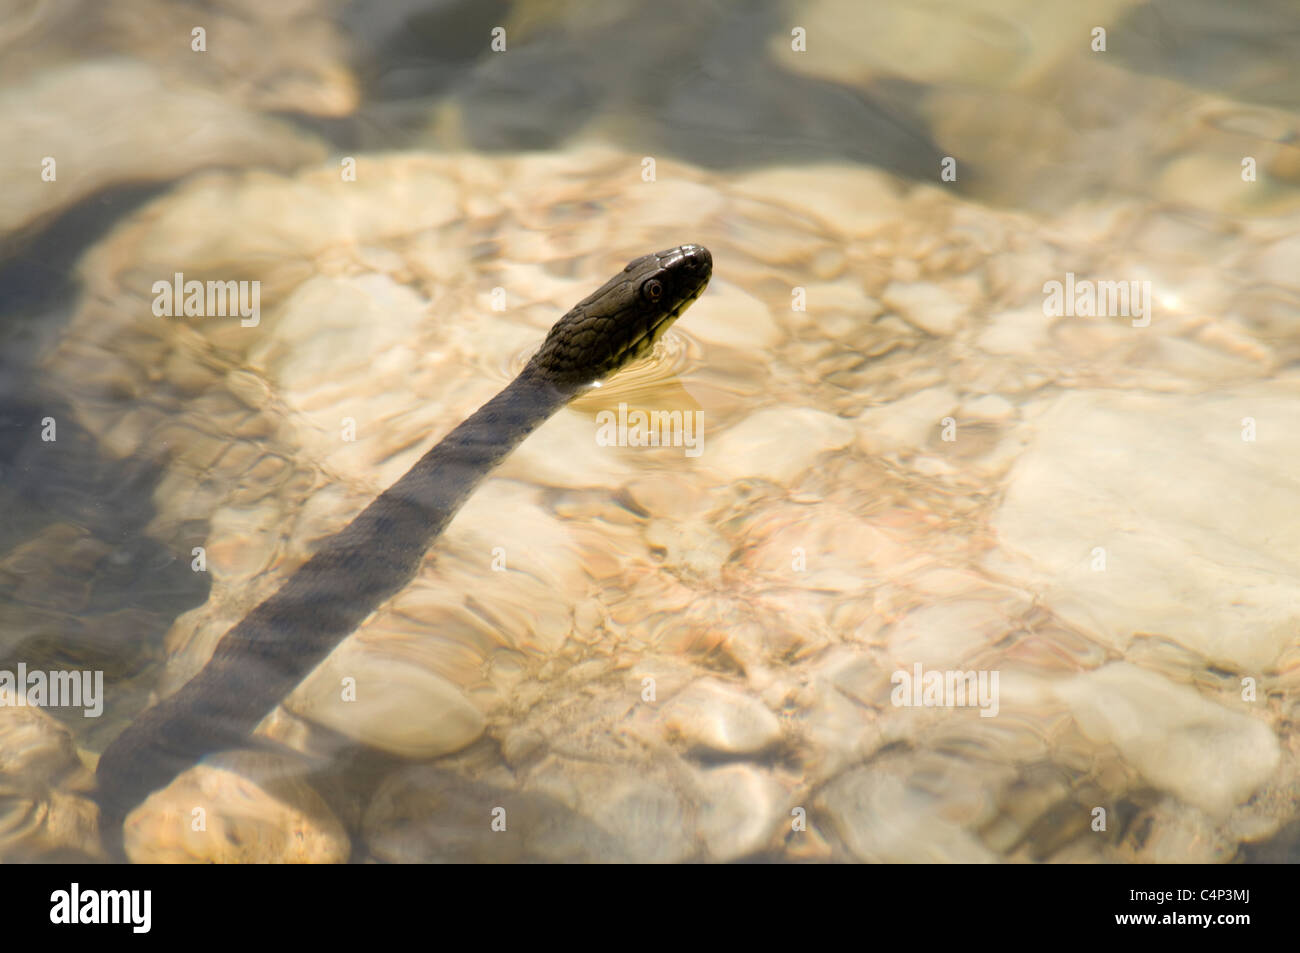 Dice Snake dans le lac Prespa sur les berges de l'île de Maligrad en Albanie. Würfelnatter Prespasaee im Am Ufer der Insel Maligrad. Banque D'Images